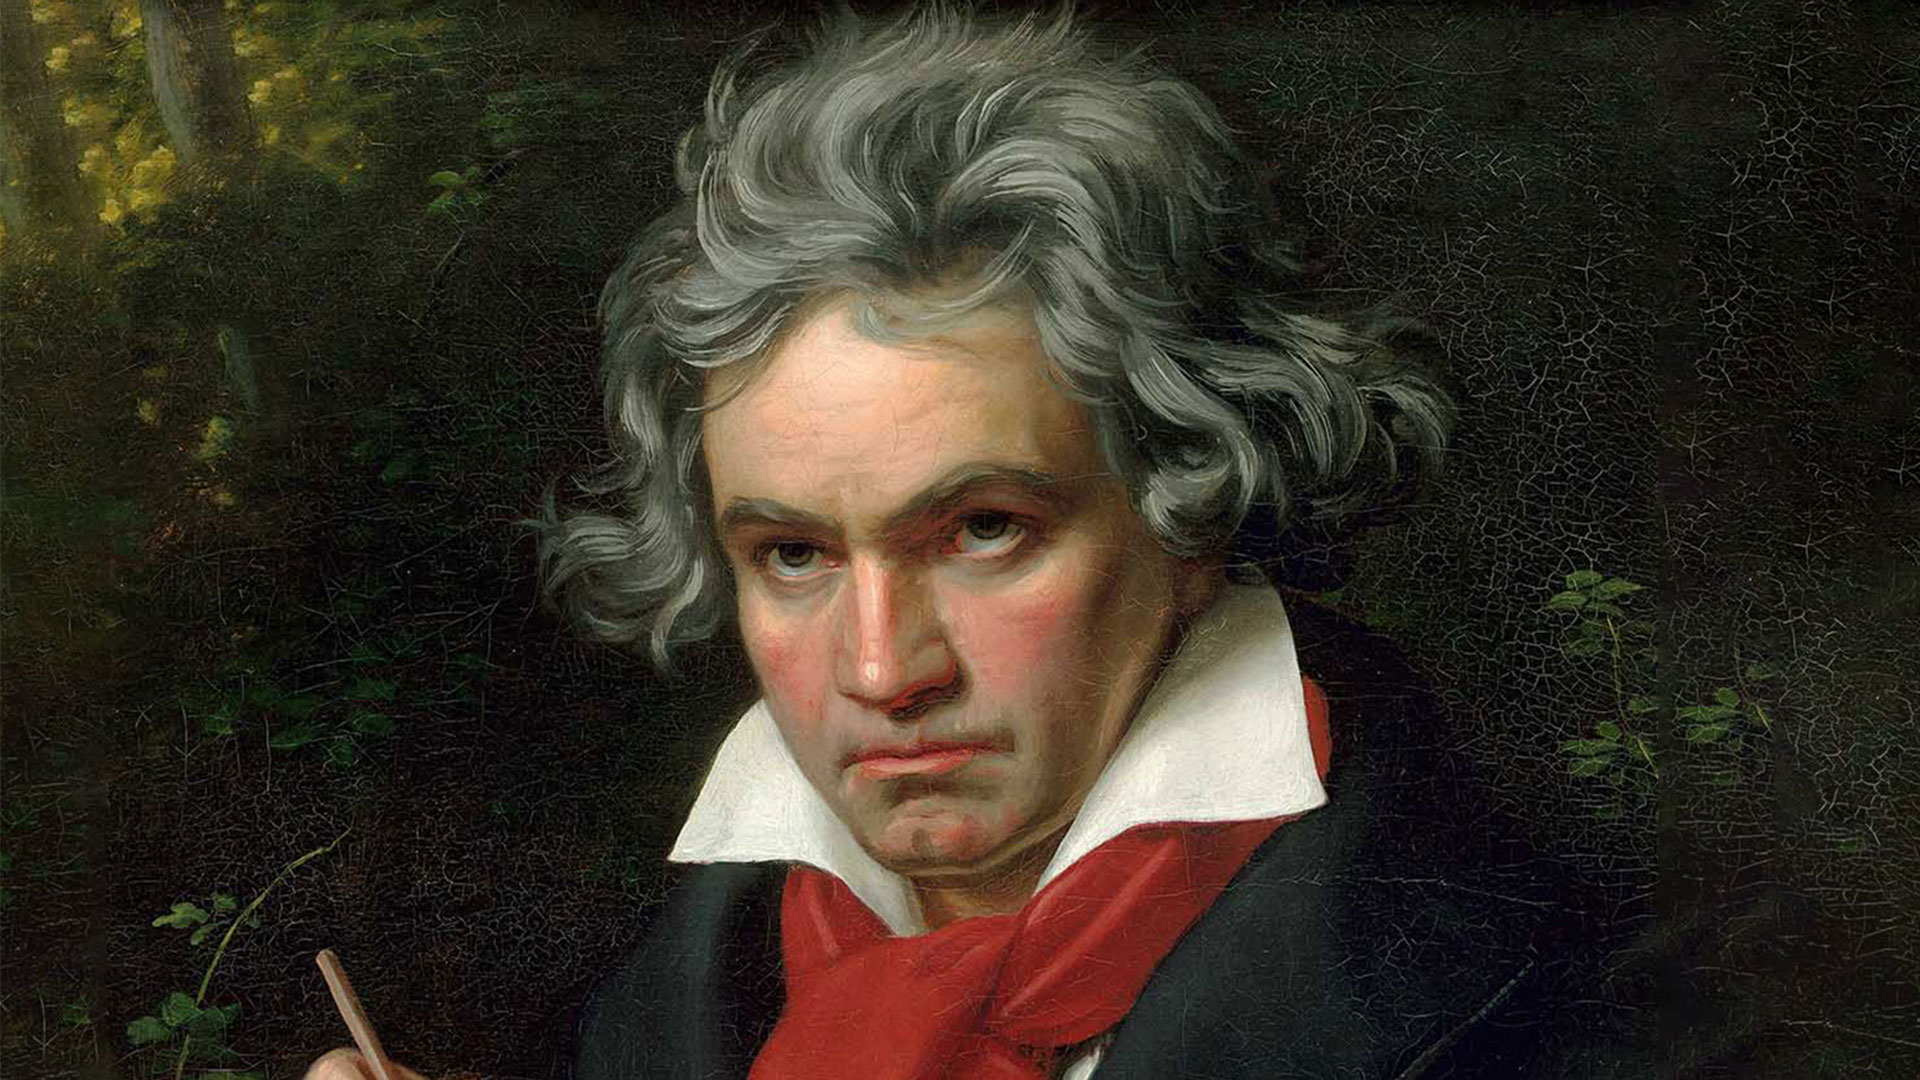 Descifraron el genoma de Beethoven y revelaron misterios sobre la causa de su muerte